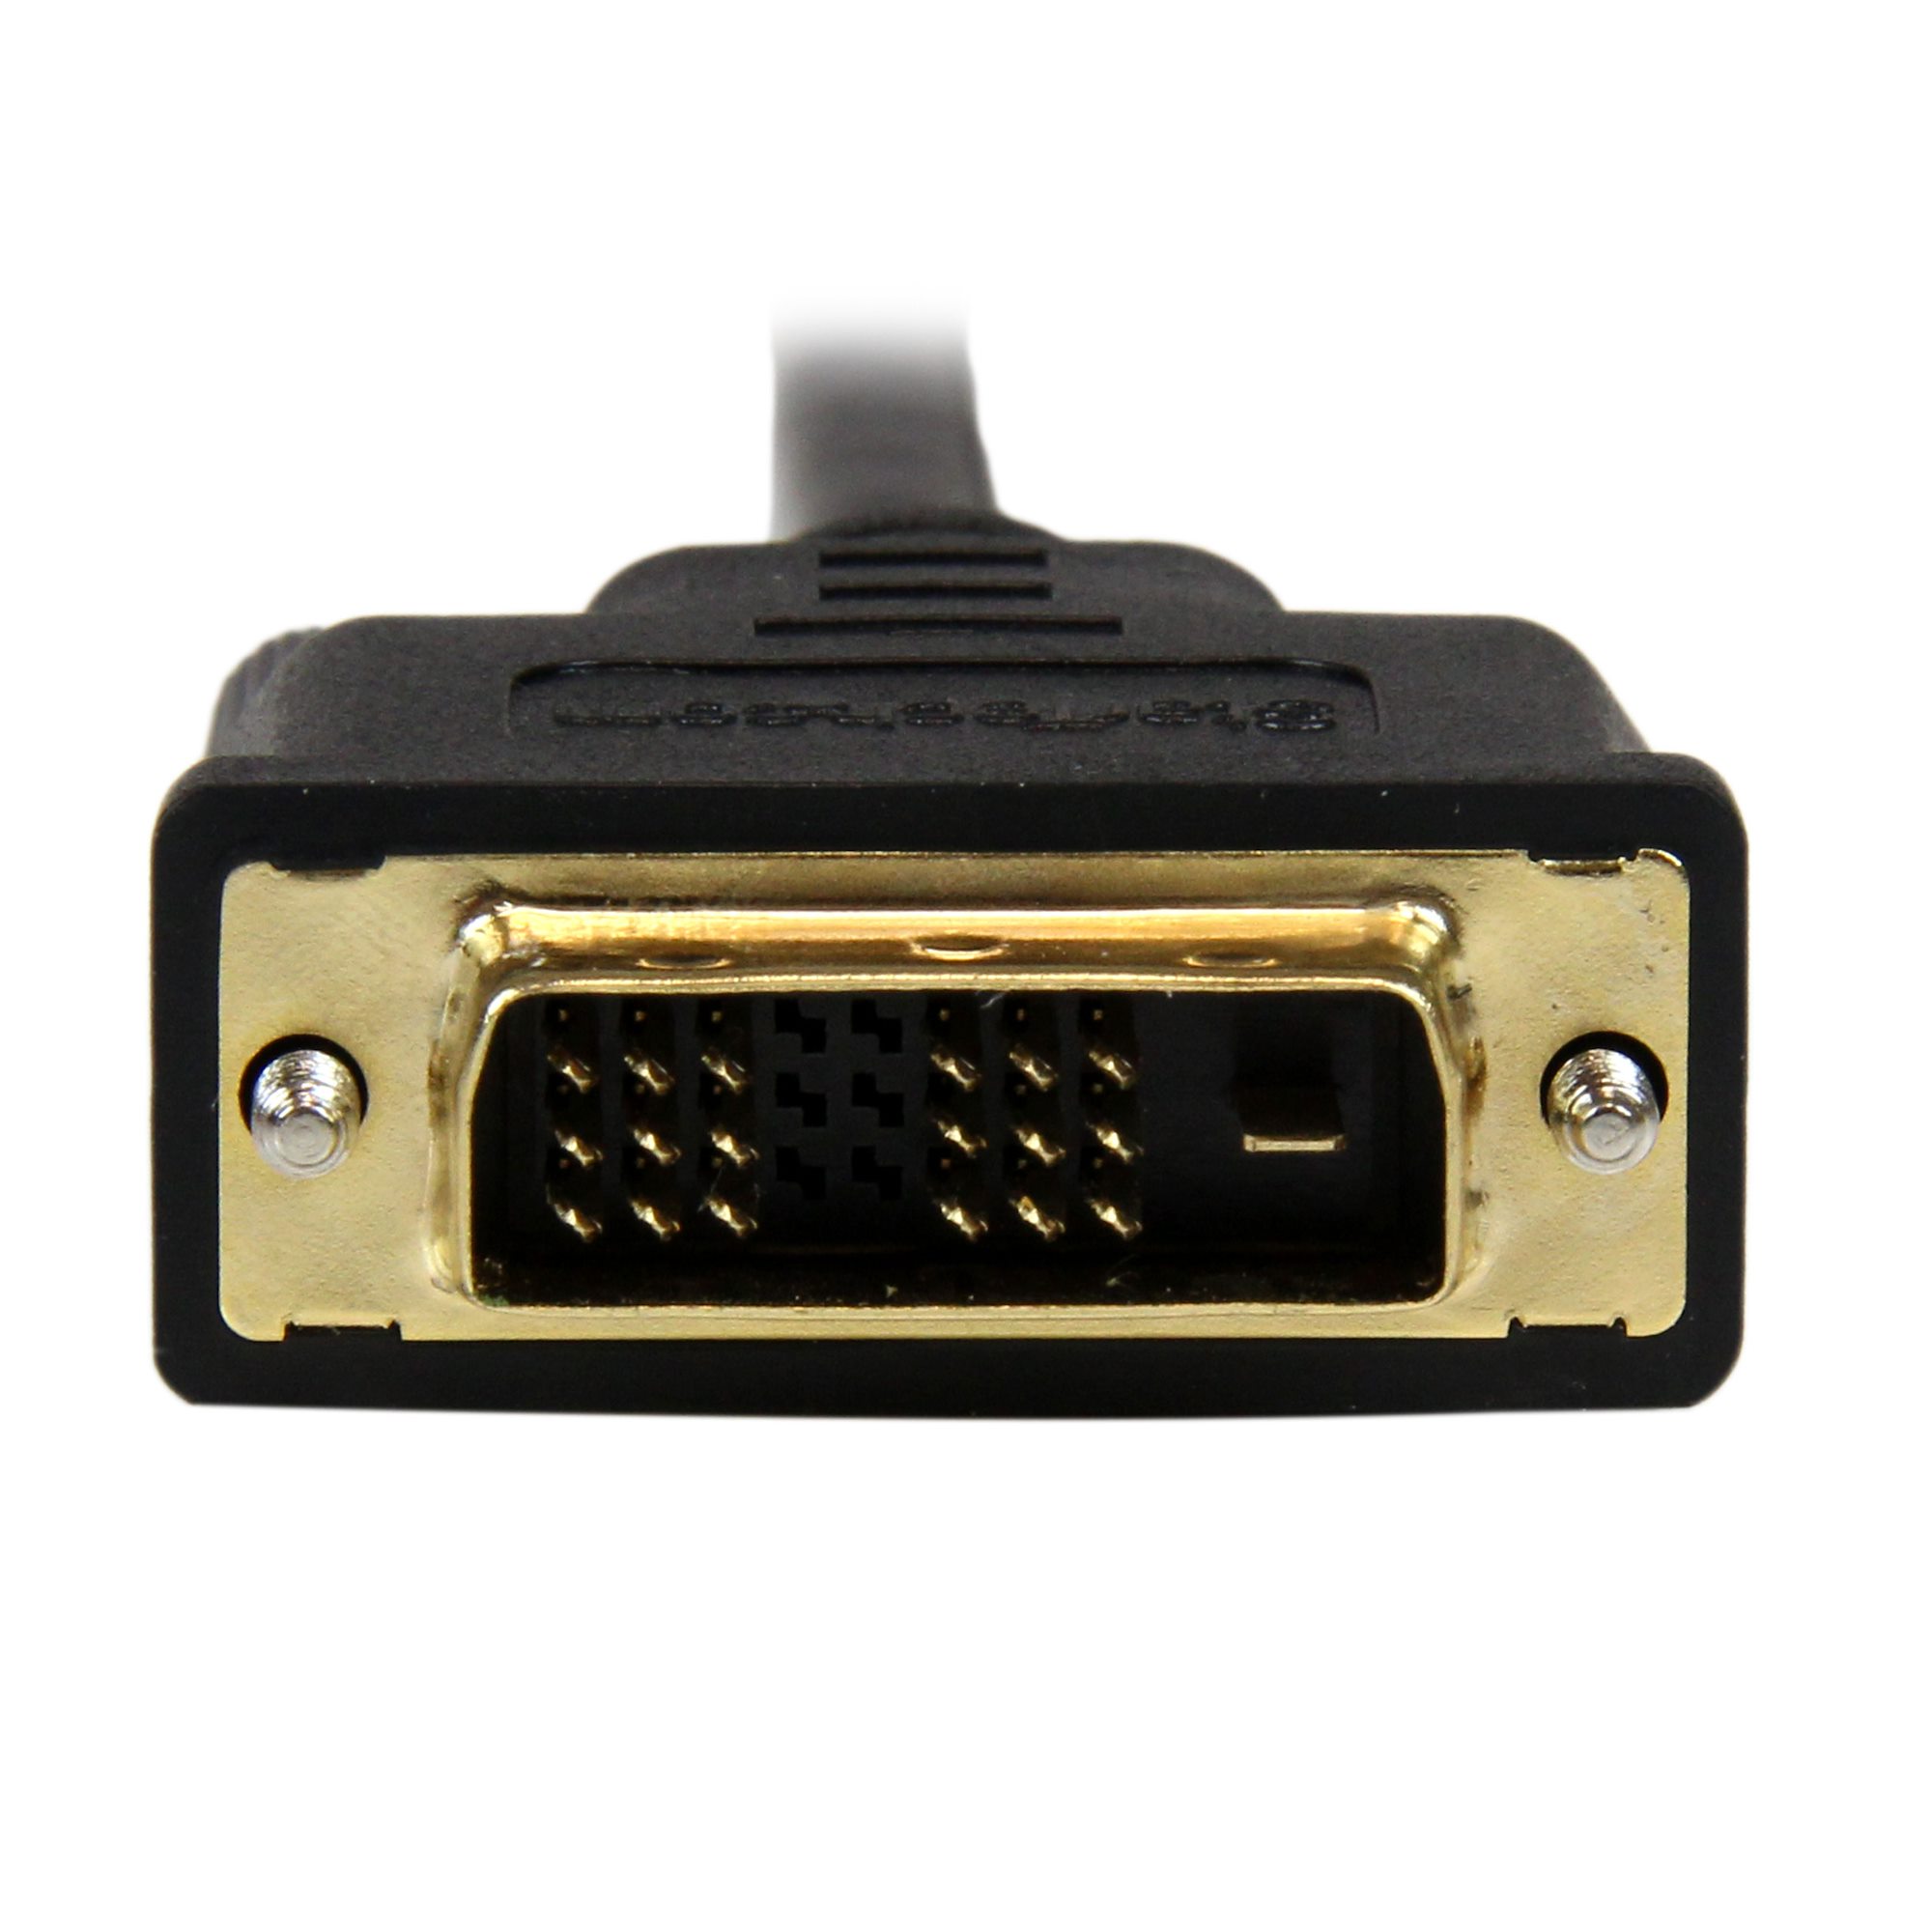 マイクロHDMI - DVI-Dケーブル(3m) オス/オス 1920x1200 - HDMI®ケーブル HDMIアダプタ | 日本